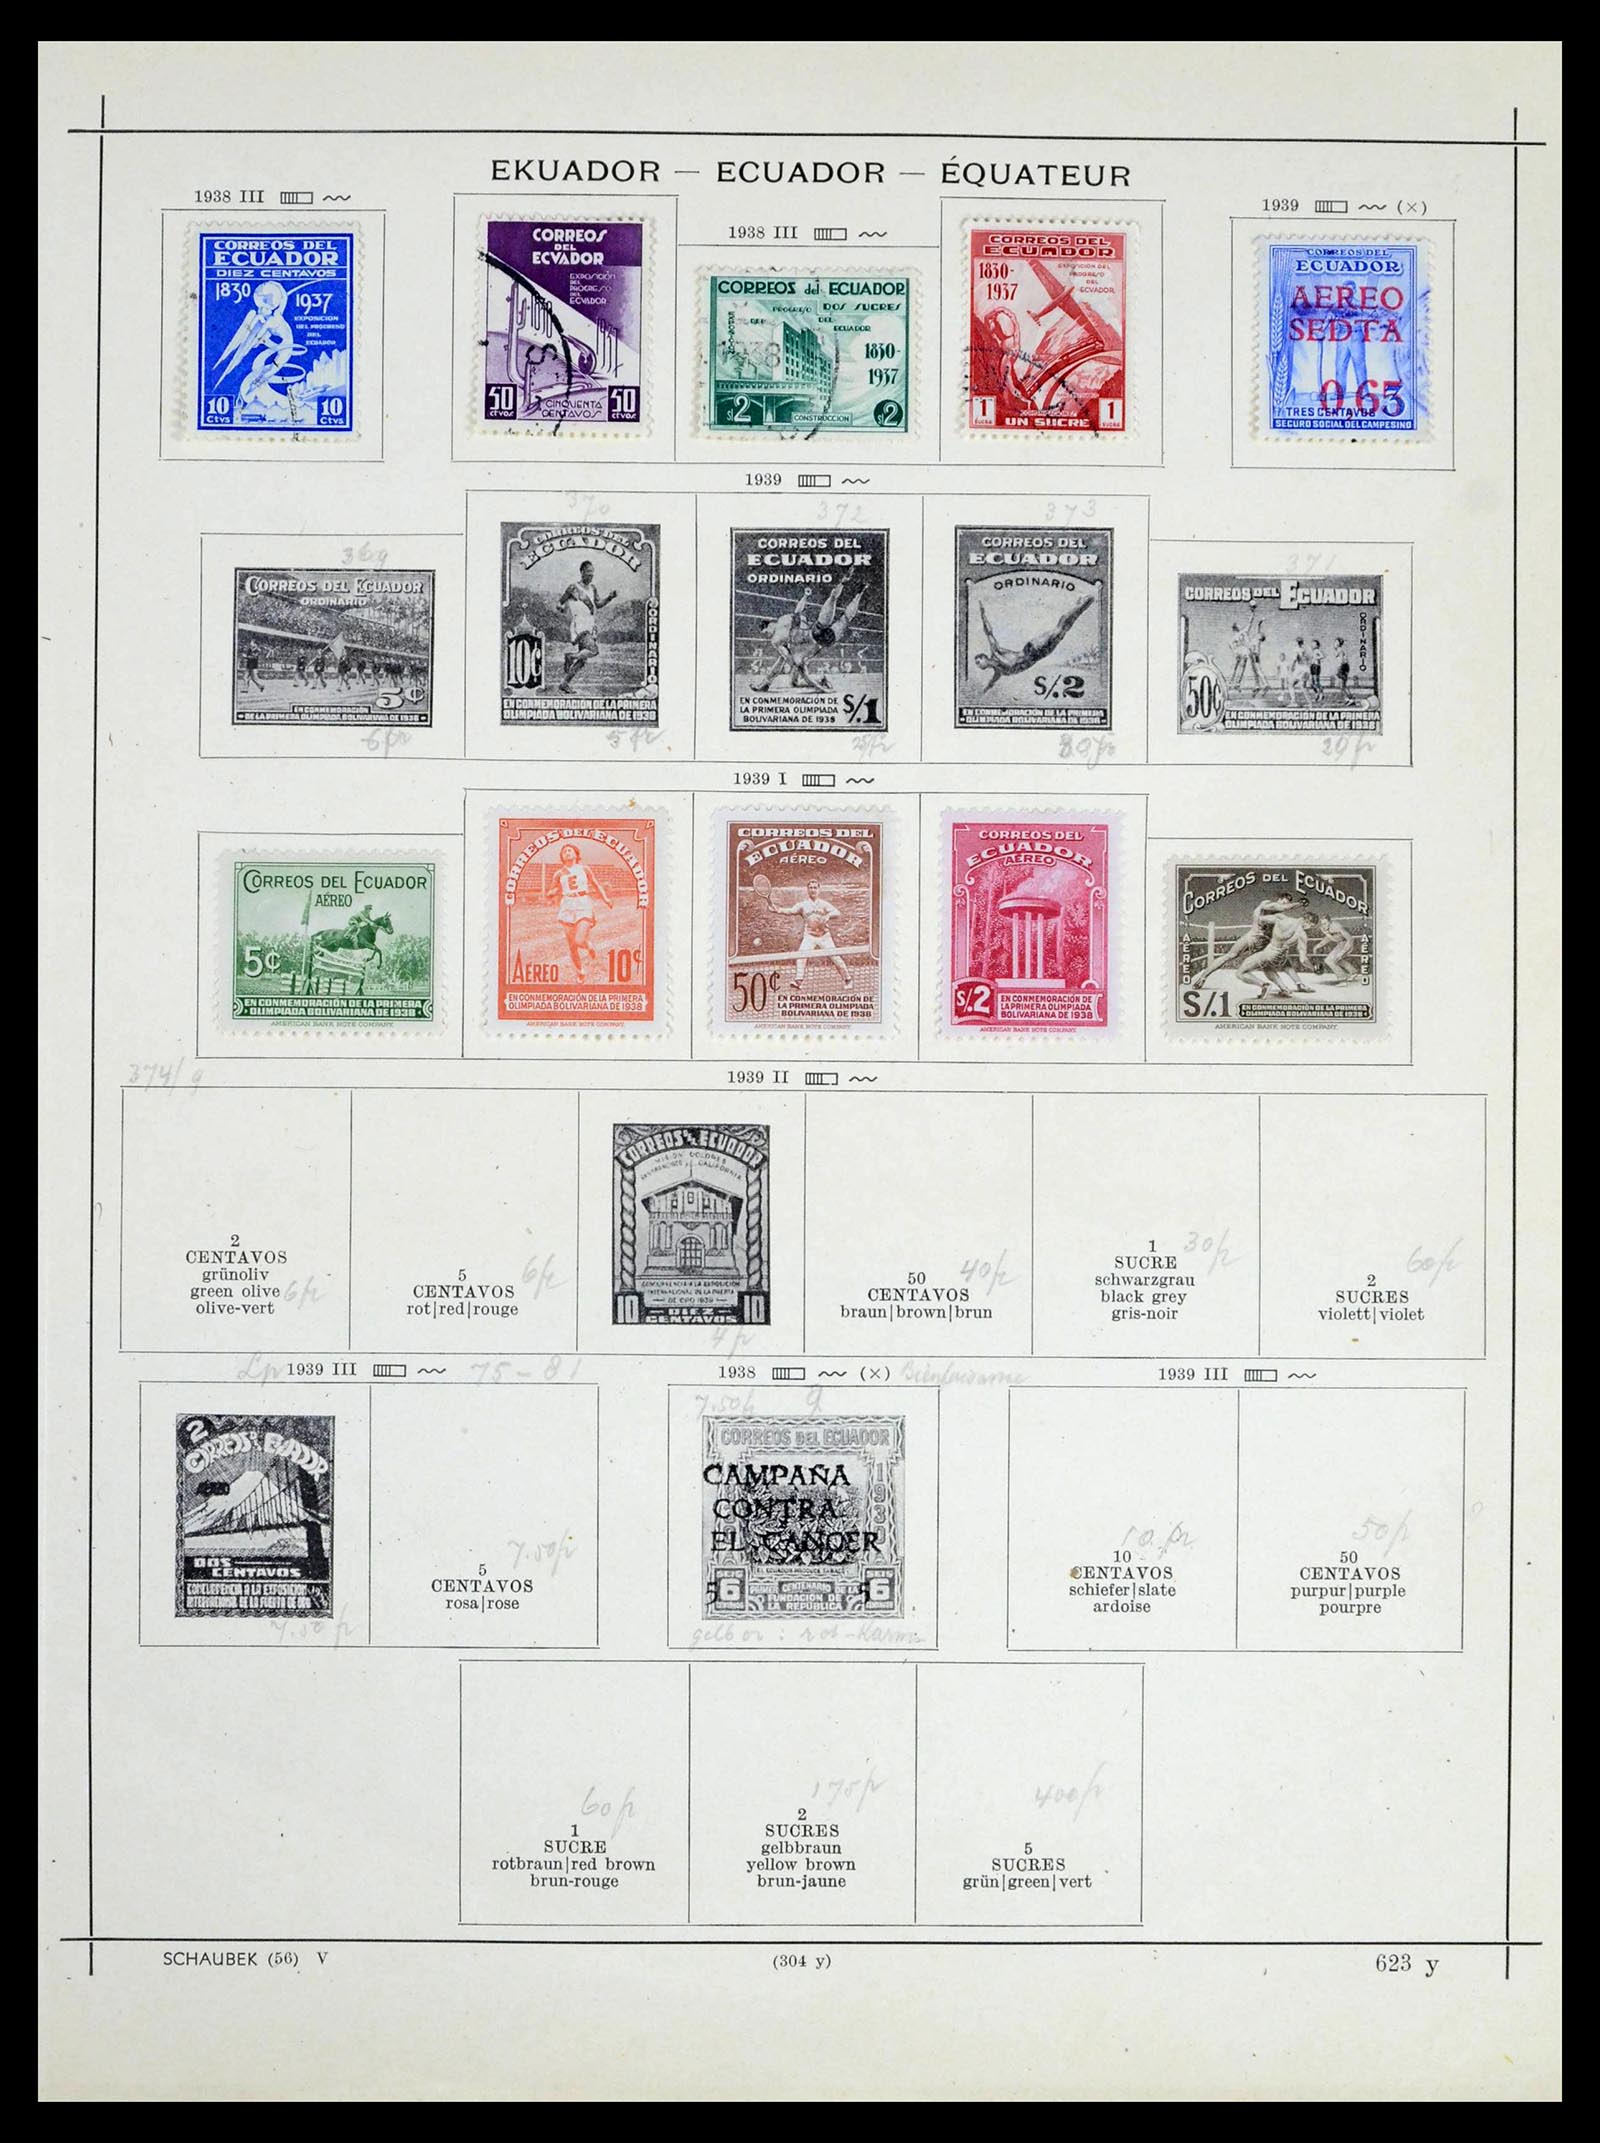 39456 0053 - Stamp collection 39456 Ecuador 1865-1960.